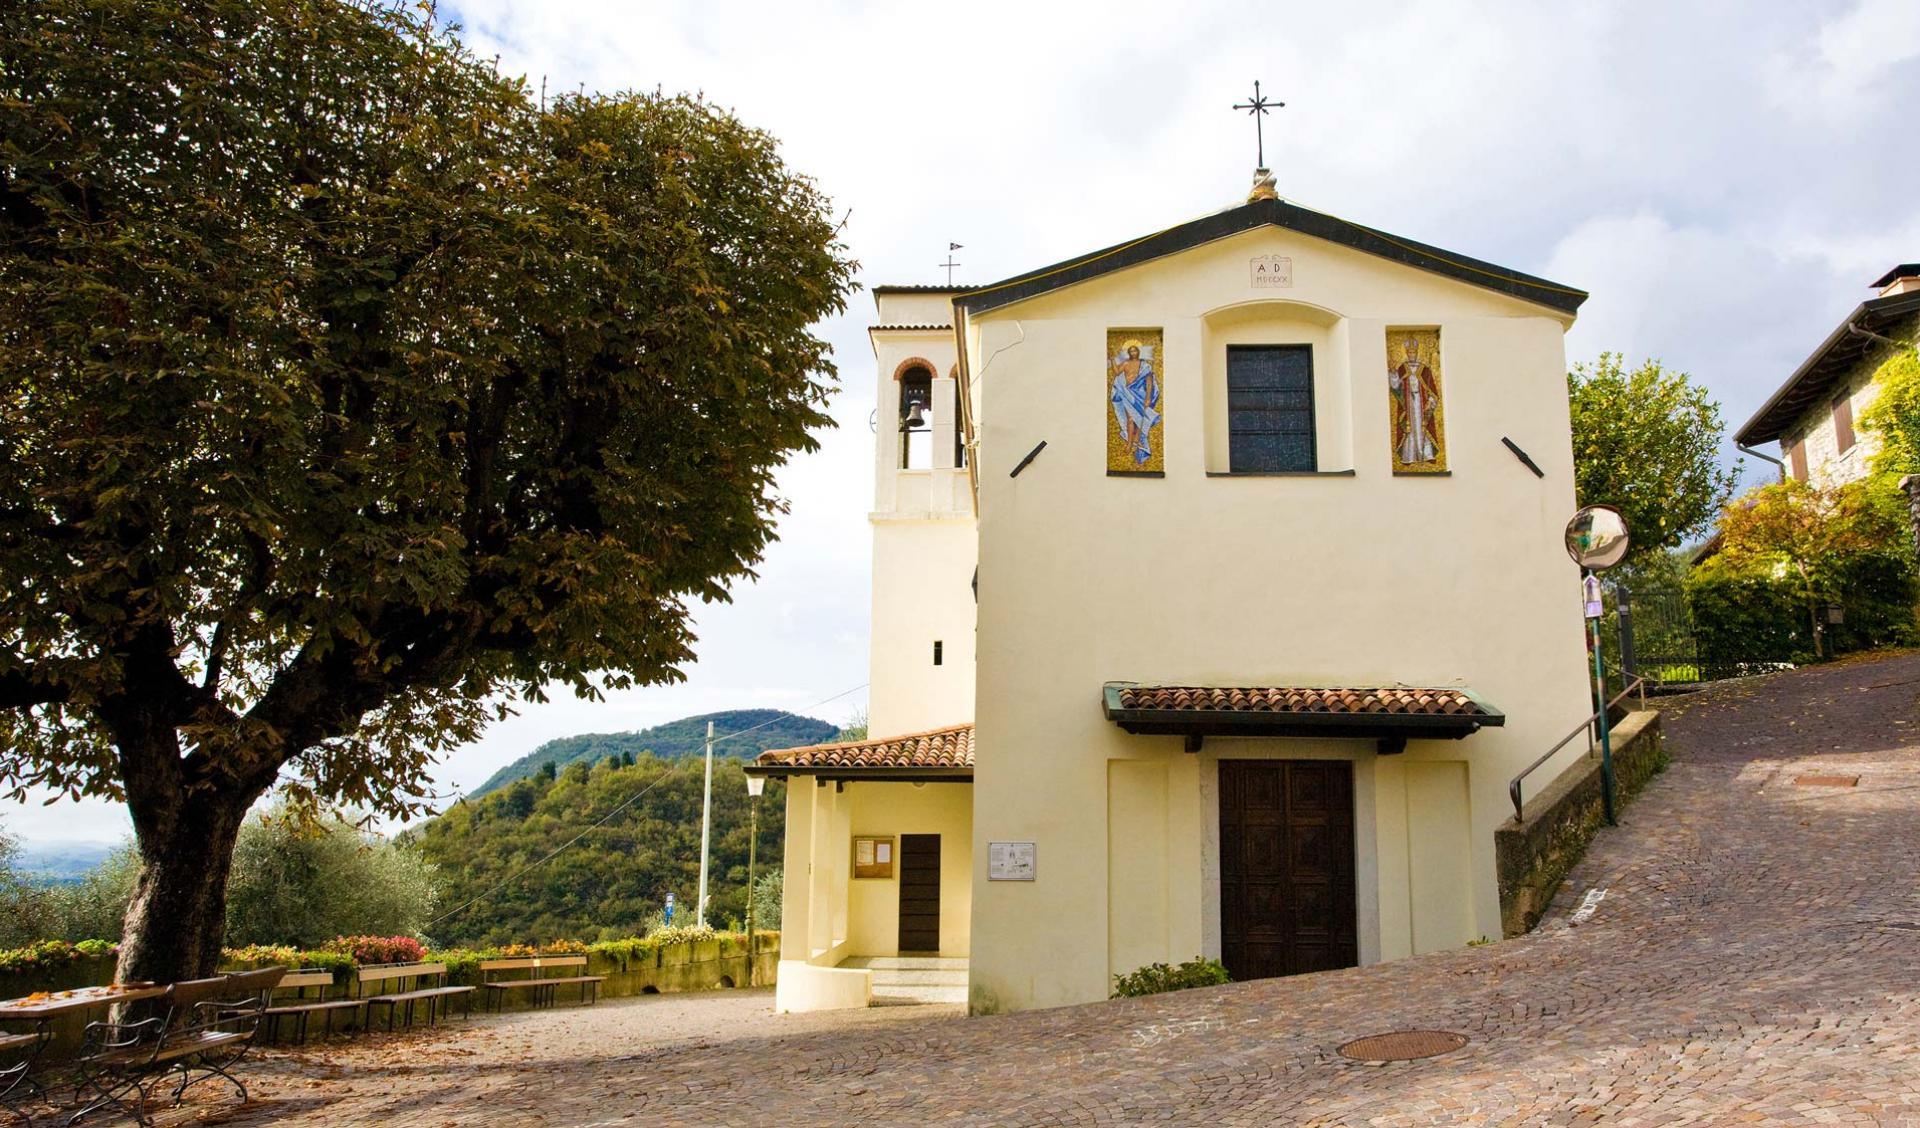 Restauro e consolidamento sismico chiese sul territorio